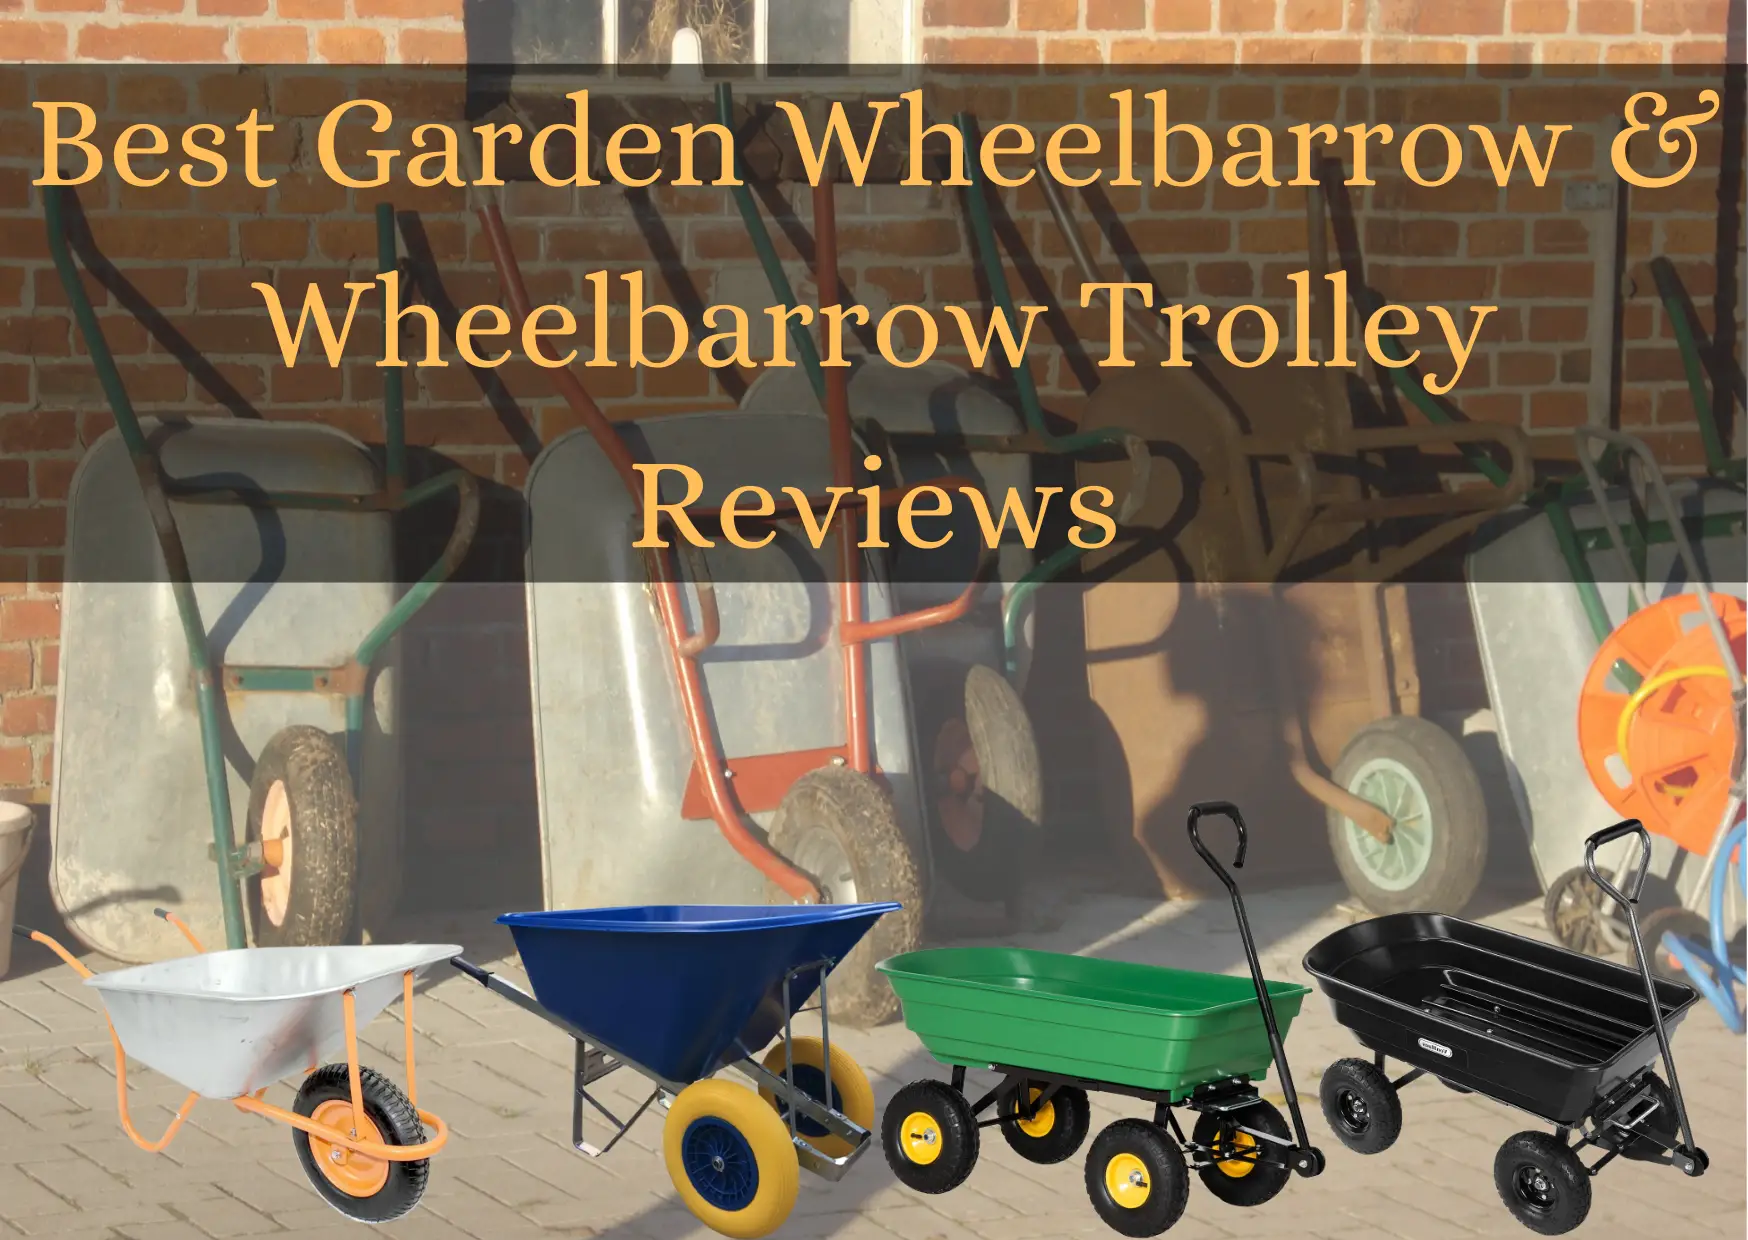 Best Garden Wheelbarrow & Wheelbarrow Trolley